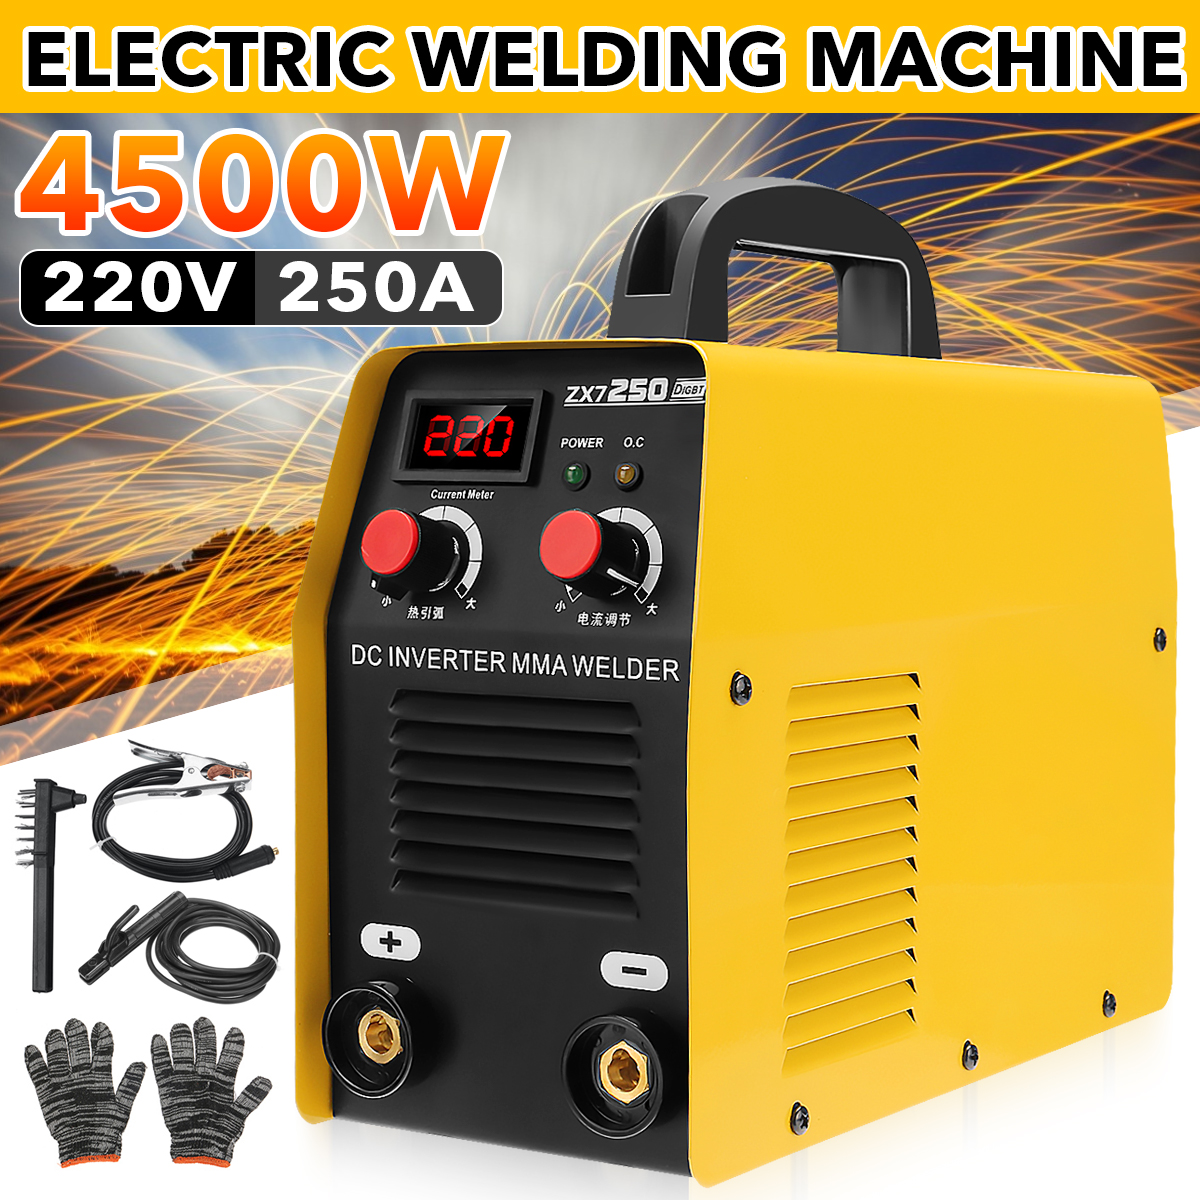 4500W-220V-250A-Mini-Electric-Welding-Machine-IGBT-Inverter-ARC-MMA-Stick-Welder-1845117-2